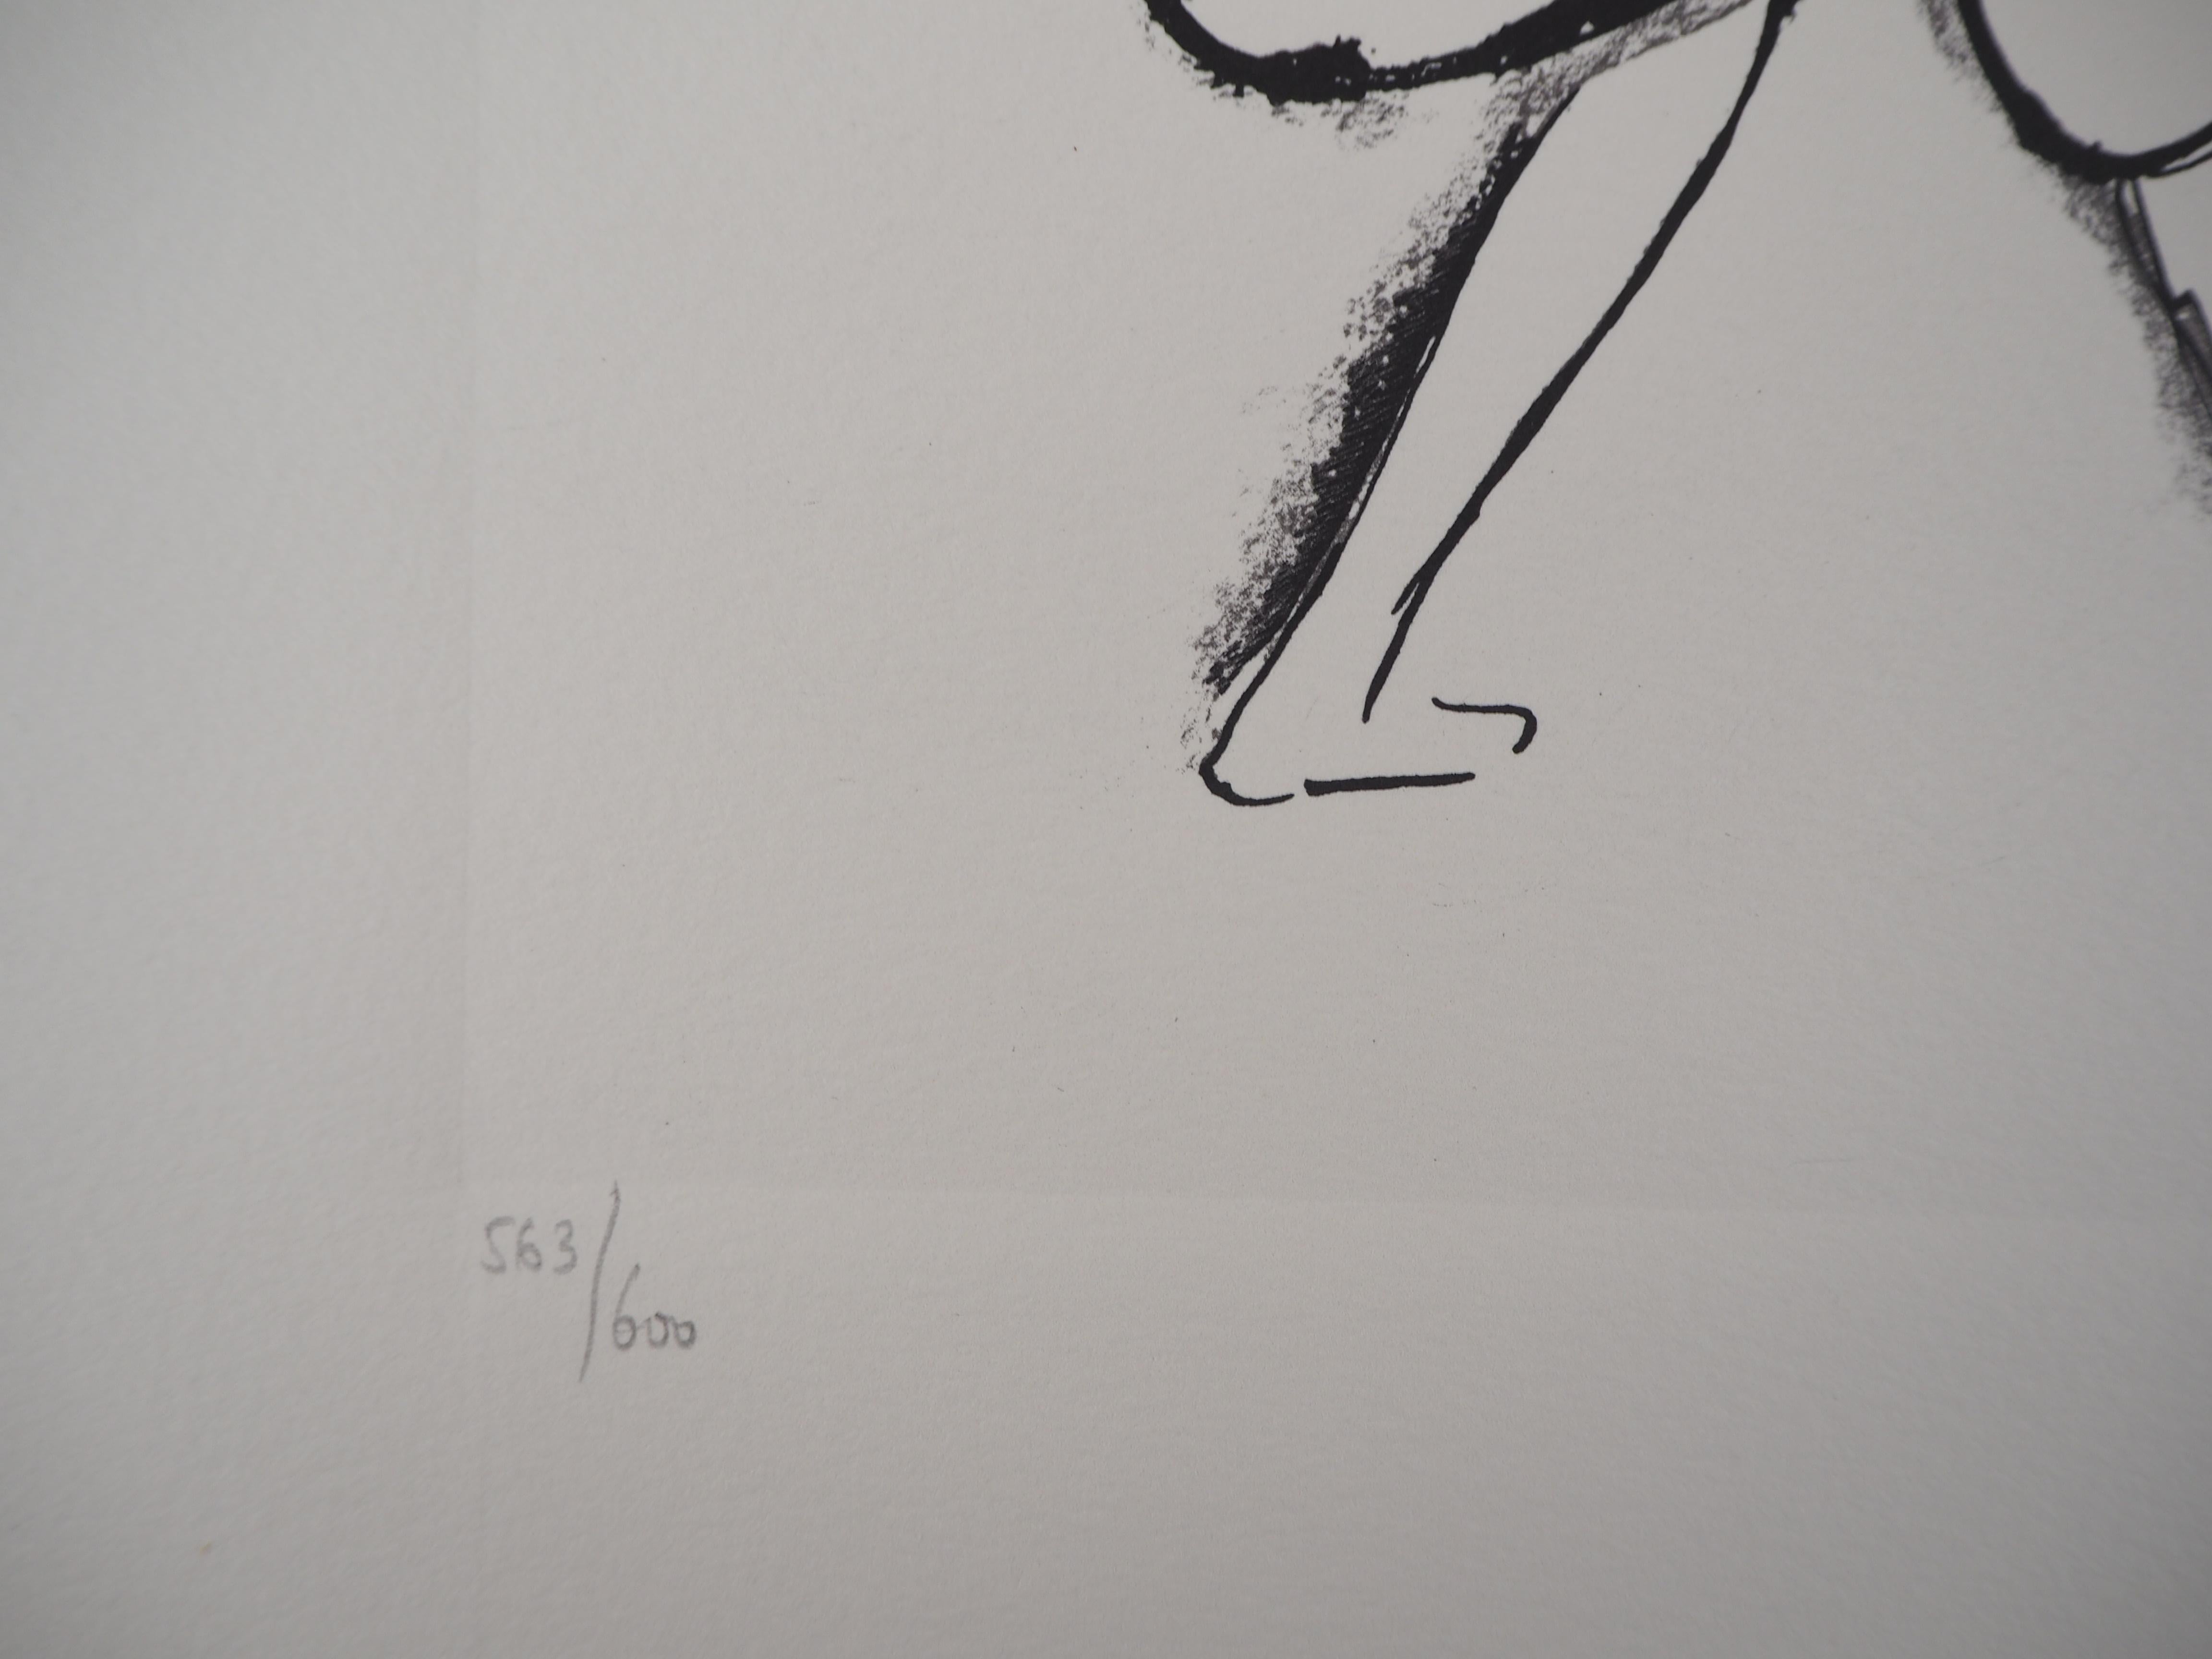 Sonia DELAUNAY
Espagne : Danseuse de flamenco

Lithographie d'après une peinture
Signature imprimée dans la plaque
Numéroté /600 
Sur vélin d'Arches 40 x 30 cm (environ 15,7 x 11,8 in)
Edition Artcurial, 1994

Excellent état